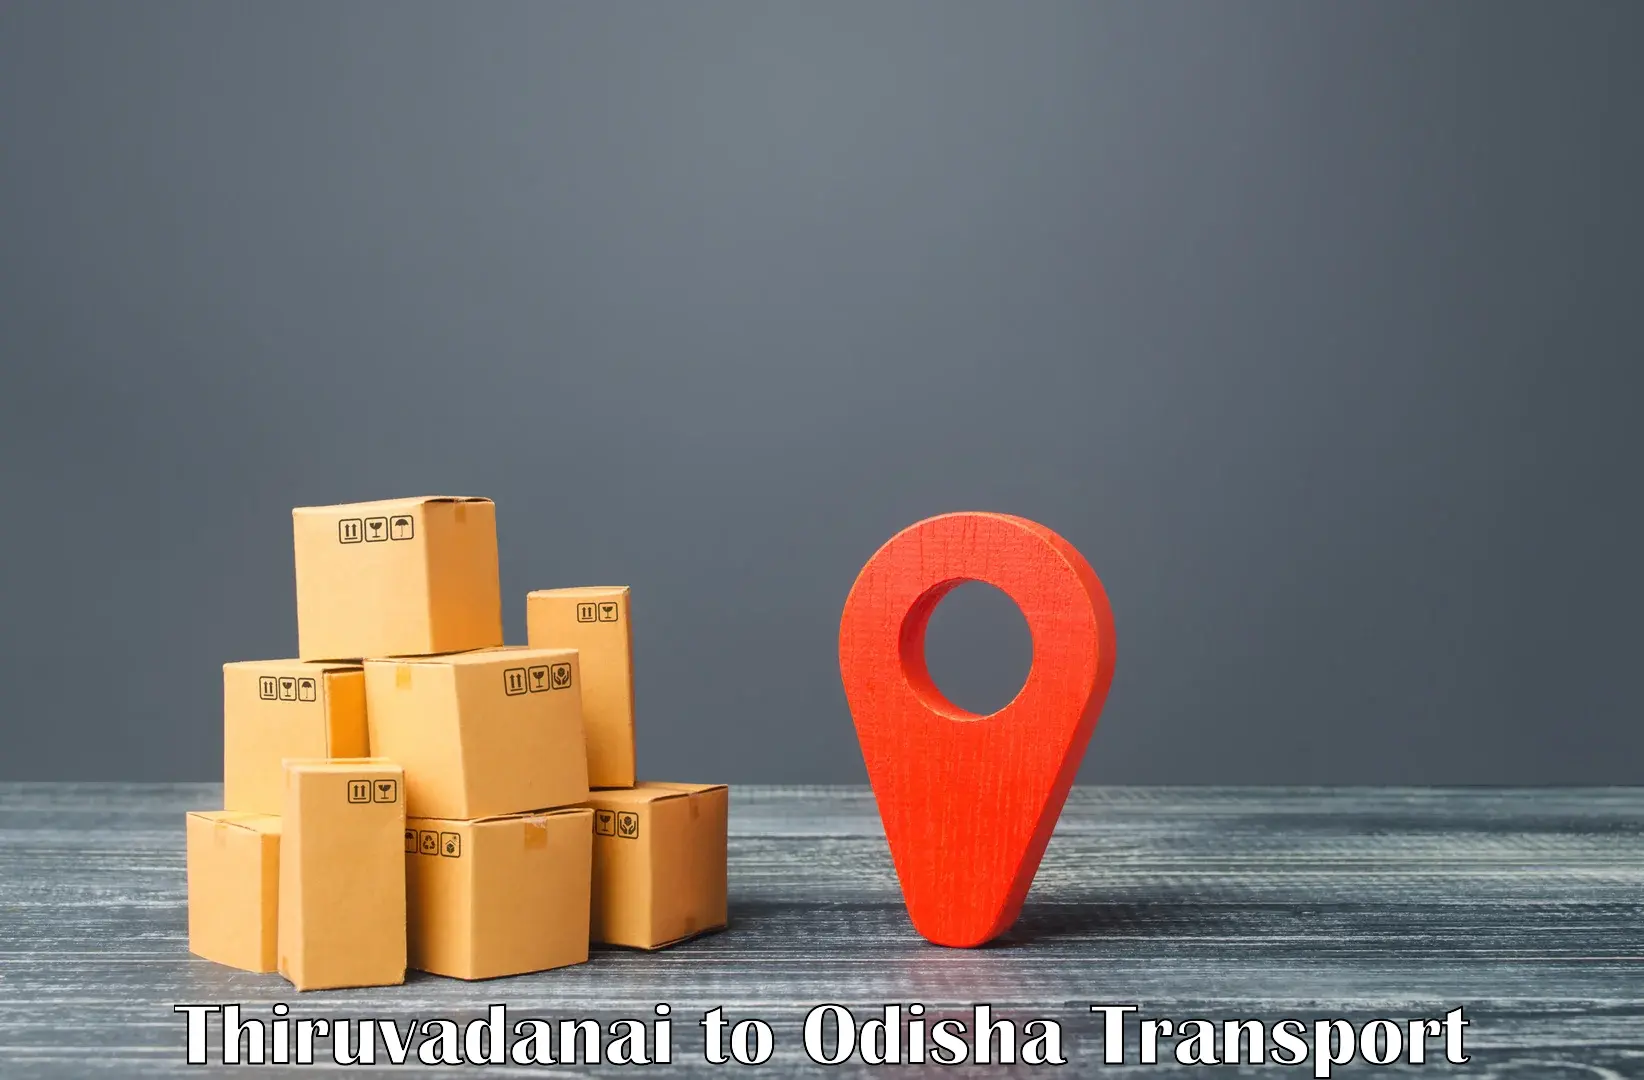 Container transport service Thiruvadanai to Tihidi